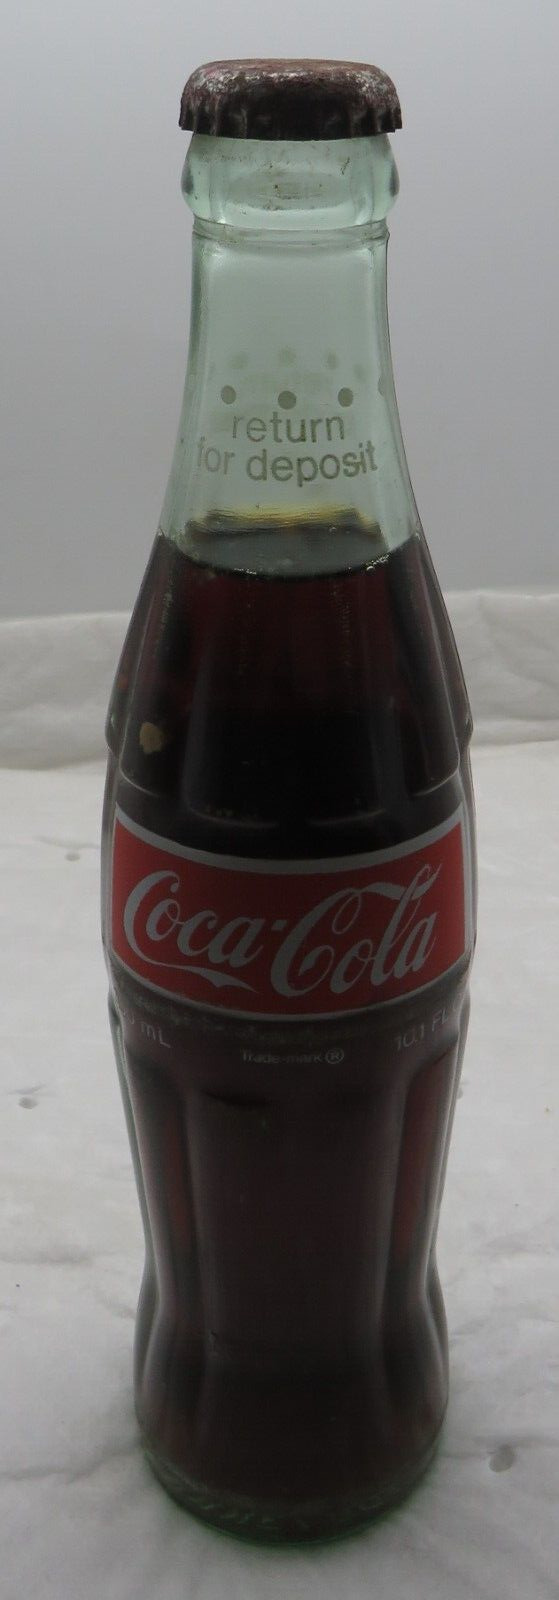 10.1 Full 1969 Vintage Coca-Cola Coke Return for Deposit Glass Bottle RARE